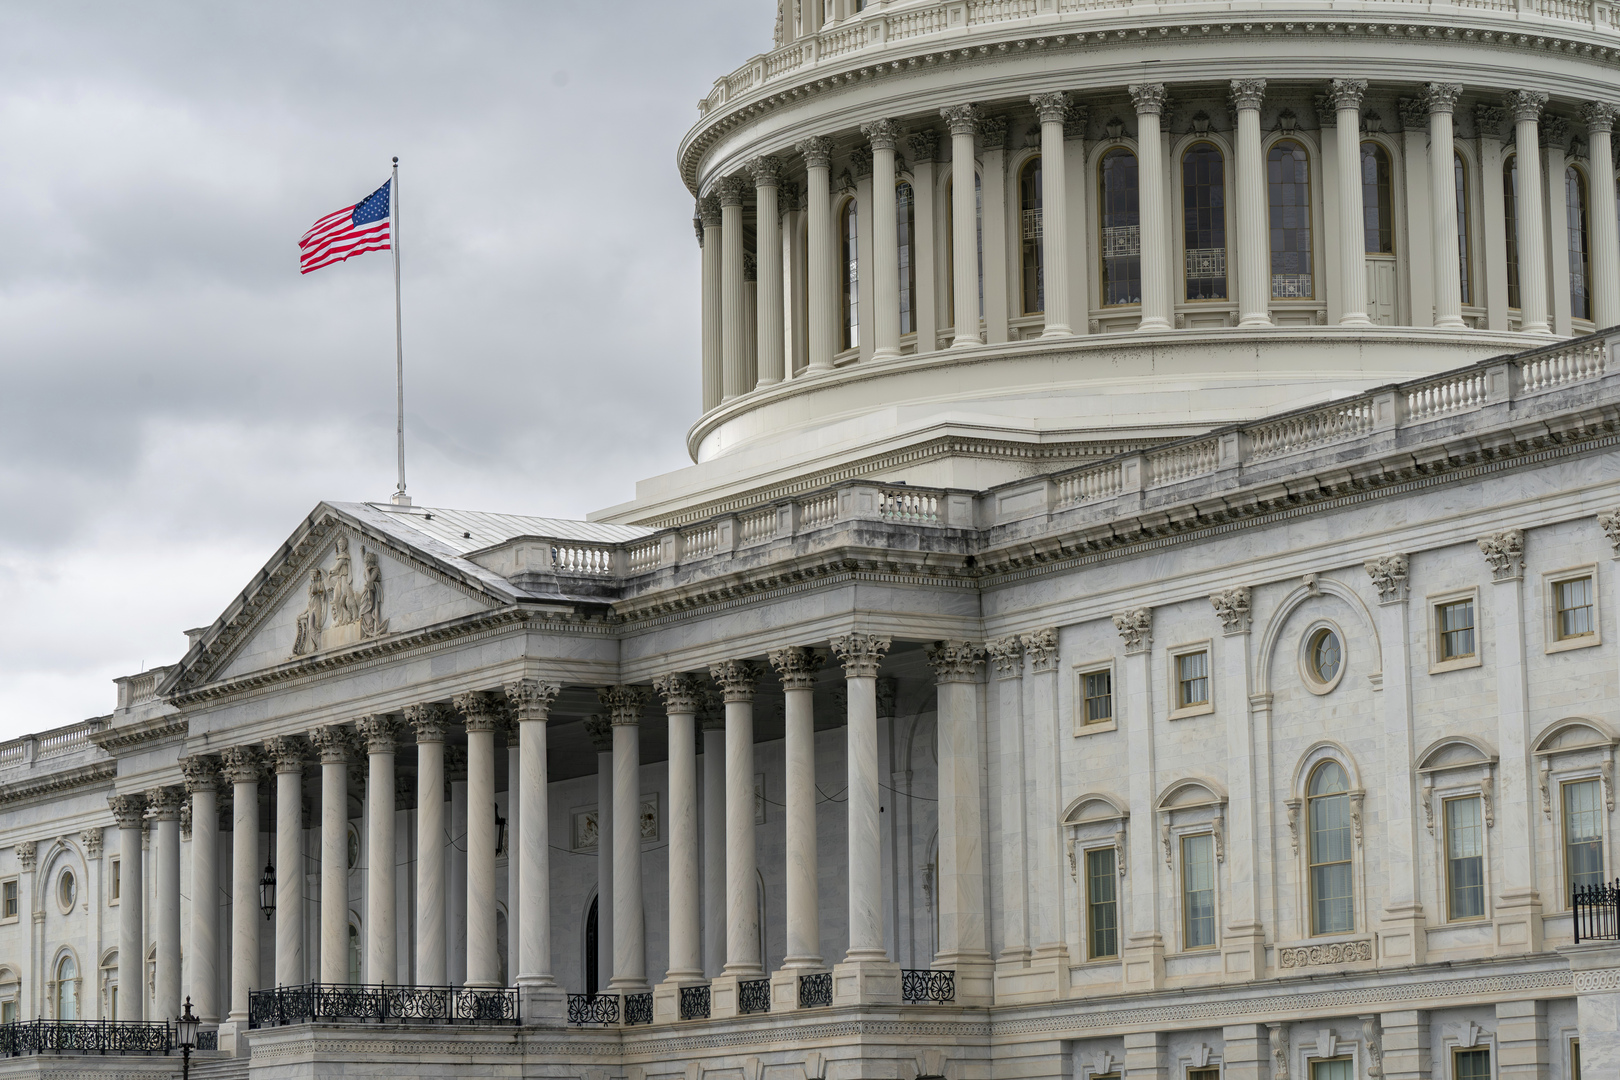 مجلس النواب الأمريكي يفشل في تمديد تمويل الحكومة